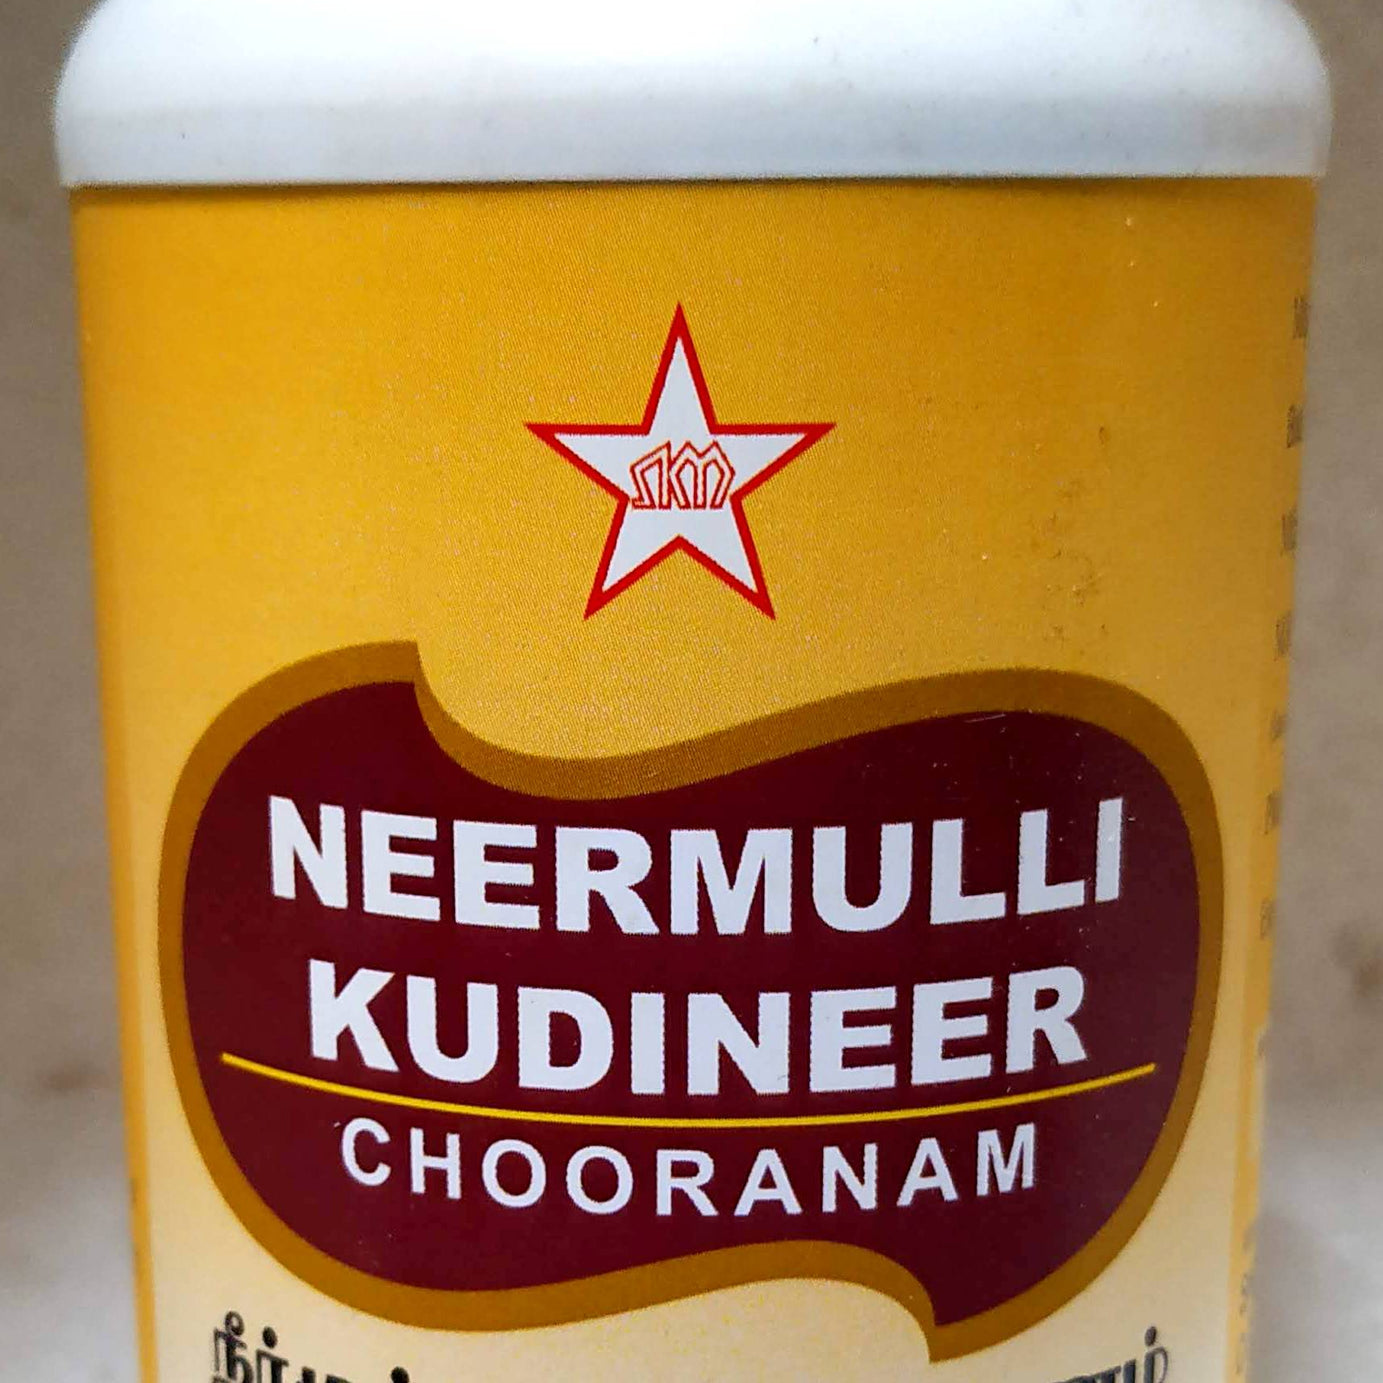 Shop SKM Neermulli Kudineer 100gm at price 84.00 from SKM Online - Ayush Care